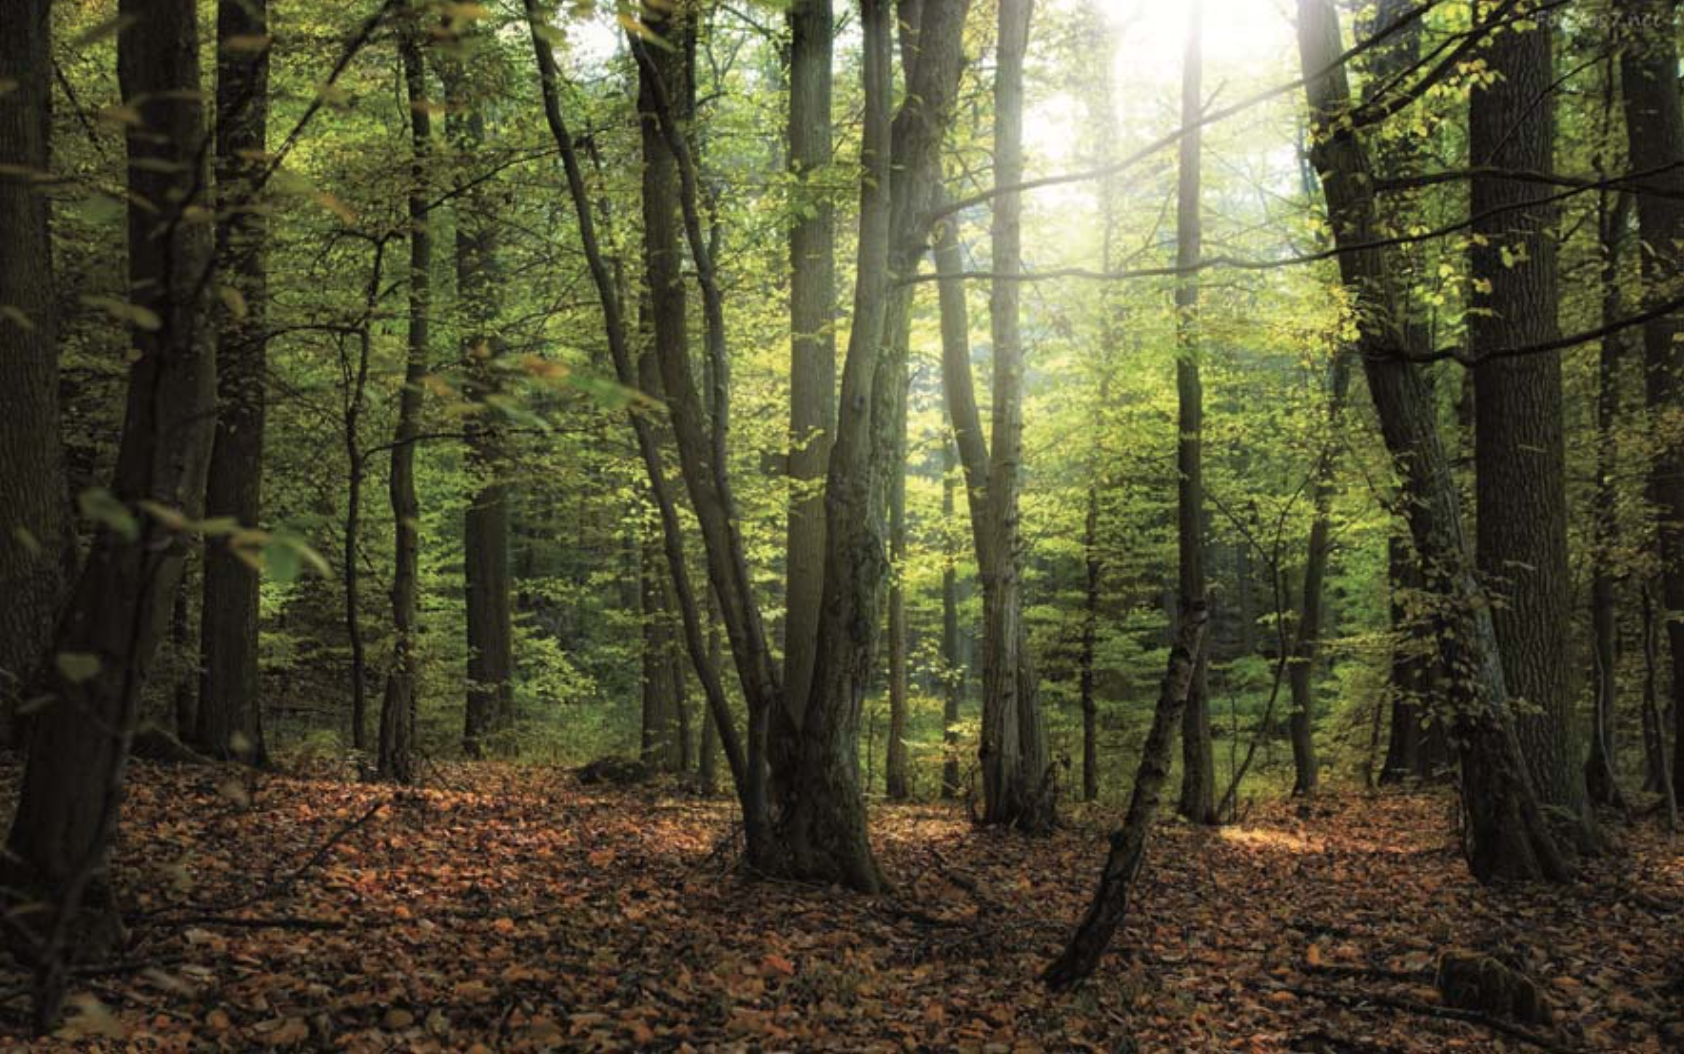 Vista general del claro de un denso bosque sobre hojas de tonos rojizos. Estamos completamente rodeados de altos árboles. Es otoño y acaba de amanecer. Entre las copas de los árboles pasan los primeros rayos de sol la mañana.